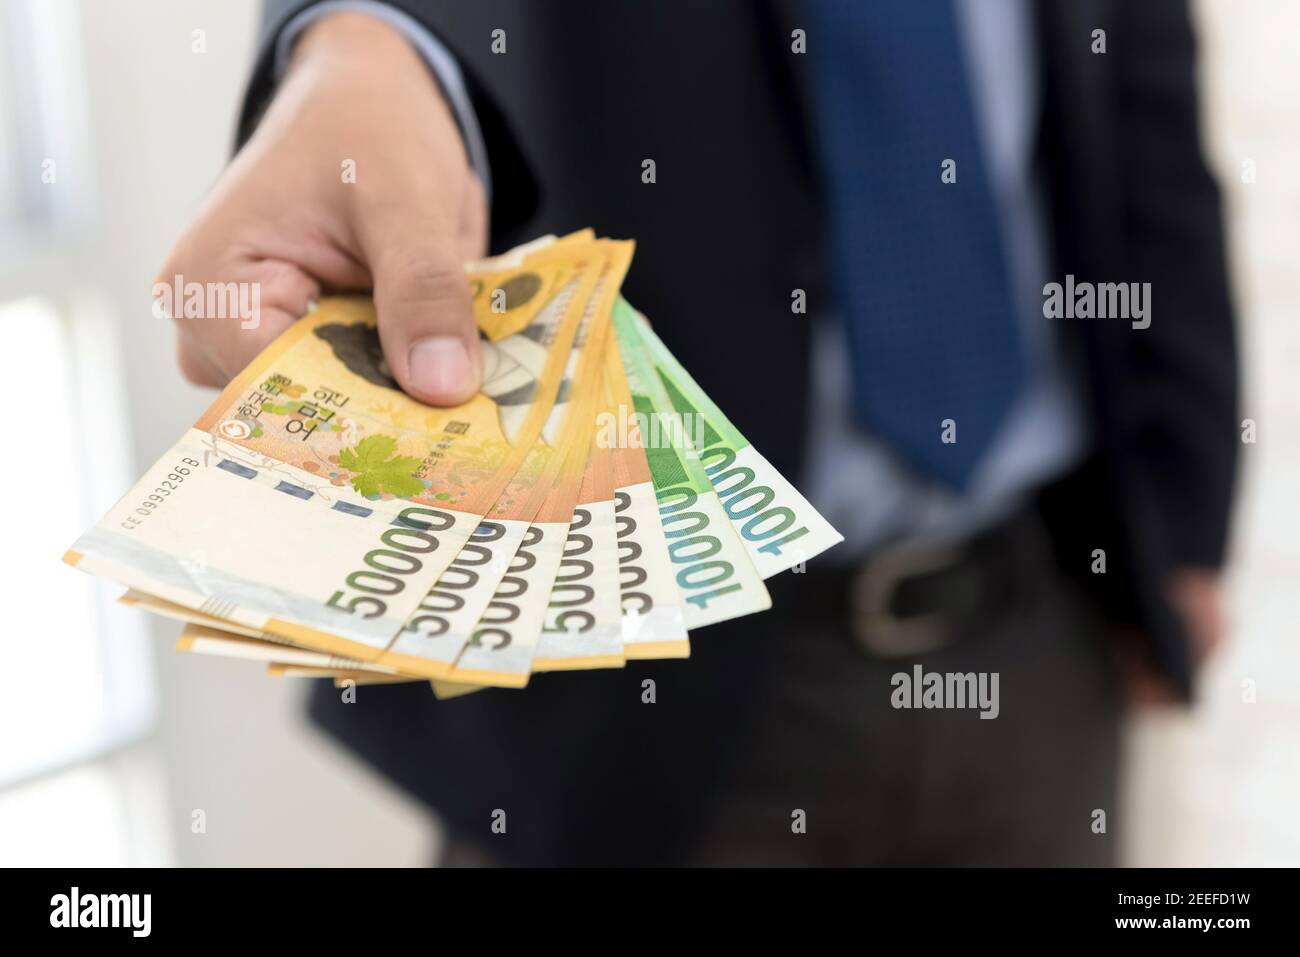 Homme d'affaires donnant de l'argent, la Corée du Sud a gagné des billets Banque D'Images